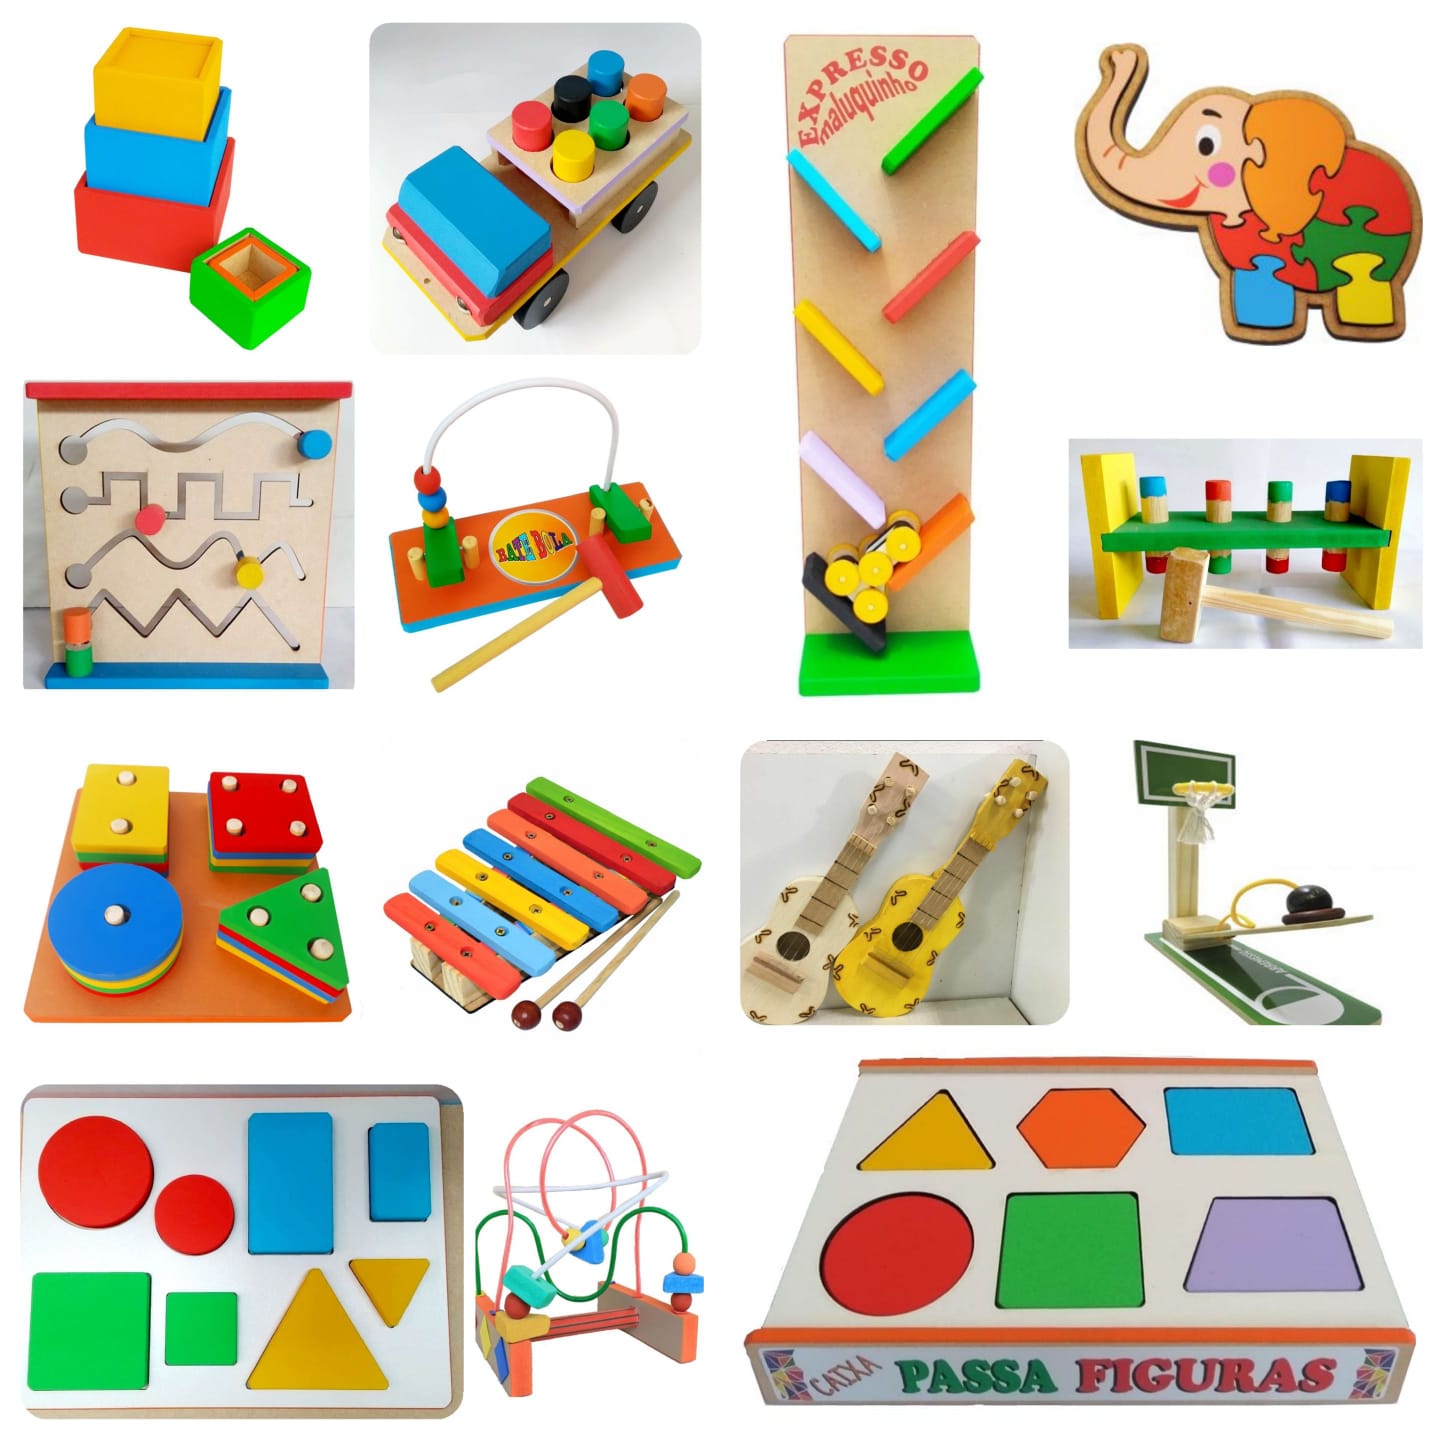 Kit 4 Brinquedos Educativos Pedagógicos De Madeira 2 Anos - Frete